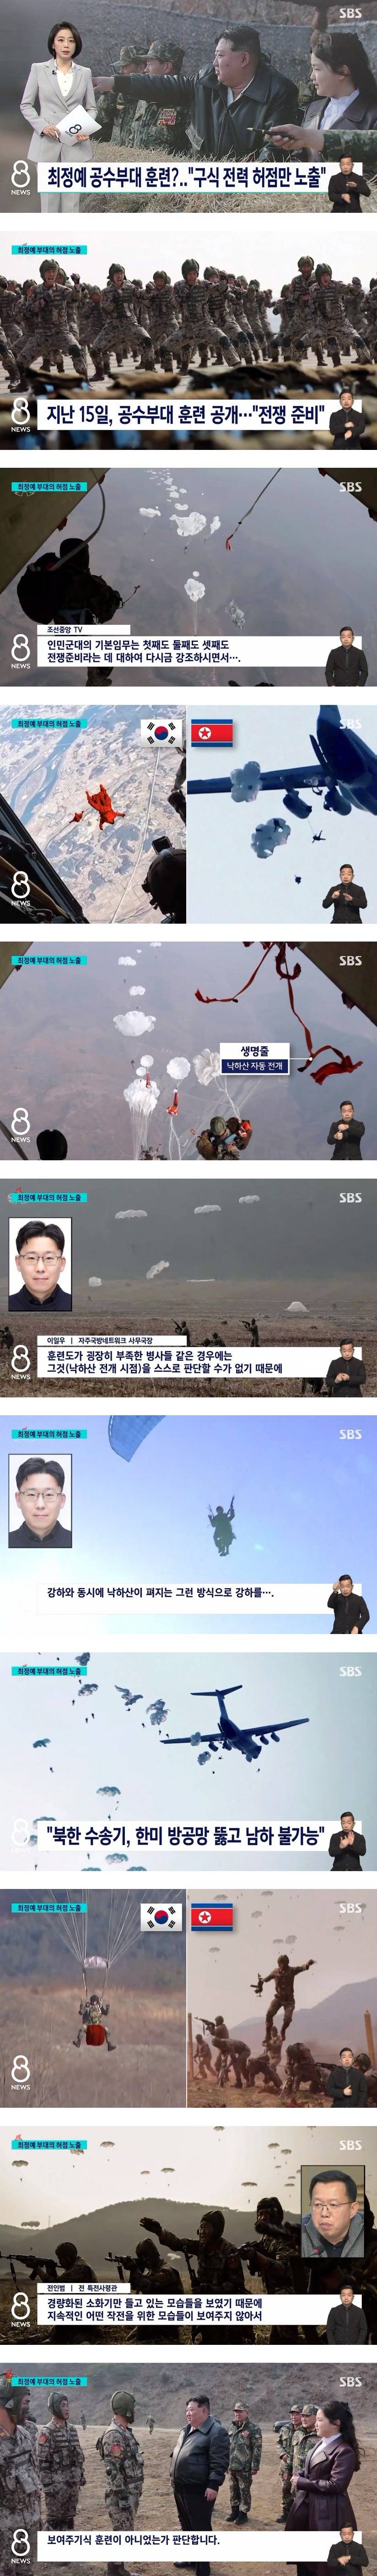 북한 최정예 공수부대 훈련